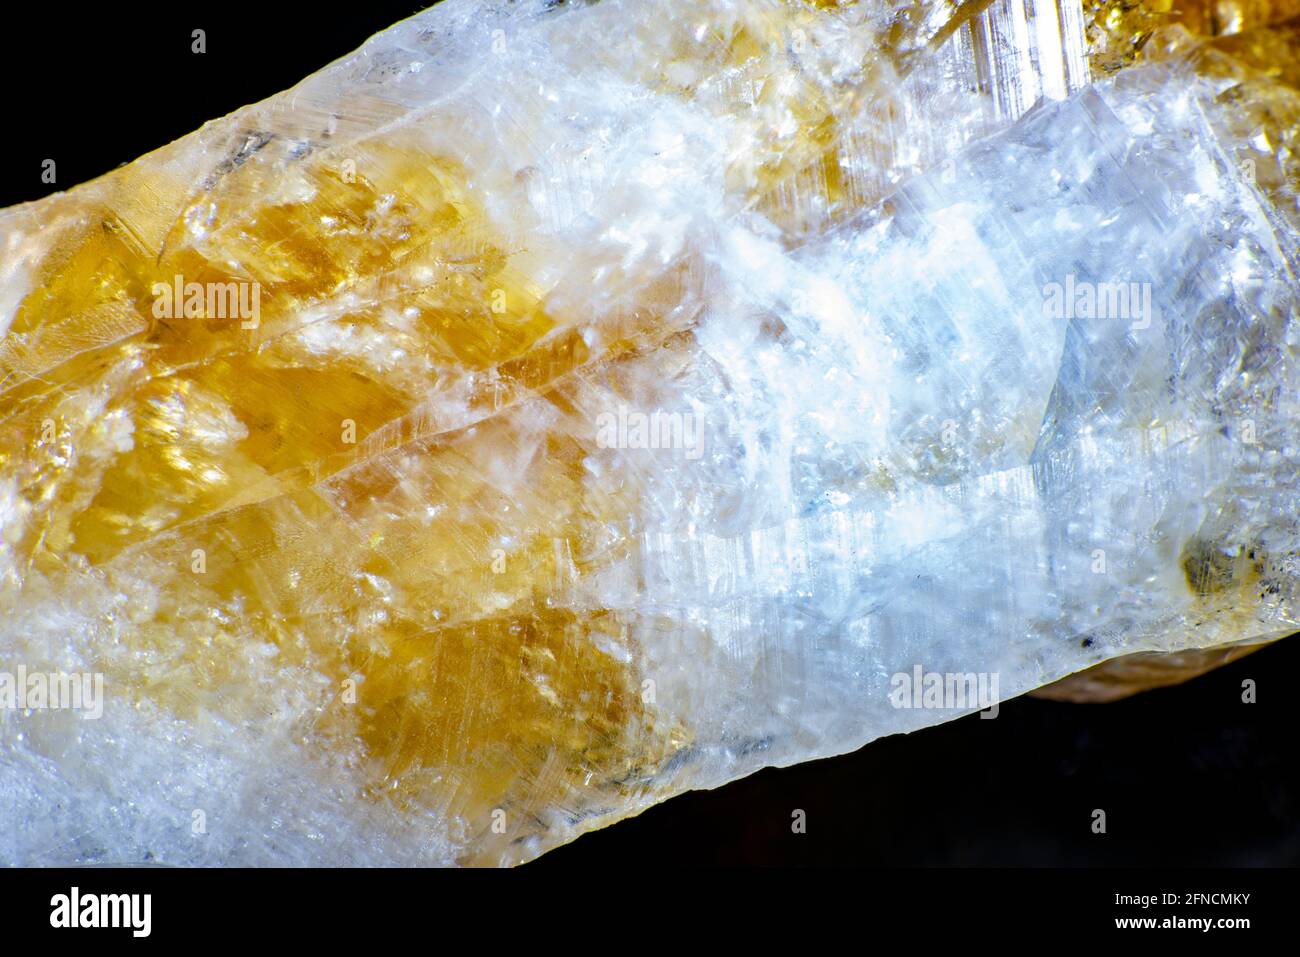 prise de vue macro d'un spécimen de roche naturelle. Cristal brut de pierre  de quartz jaune citrine du Brésil. Fond doré chatoyant. Photo de haute  qualité Photo Stock - Alamy